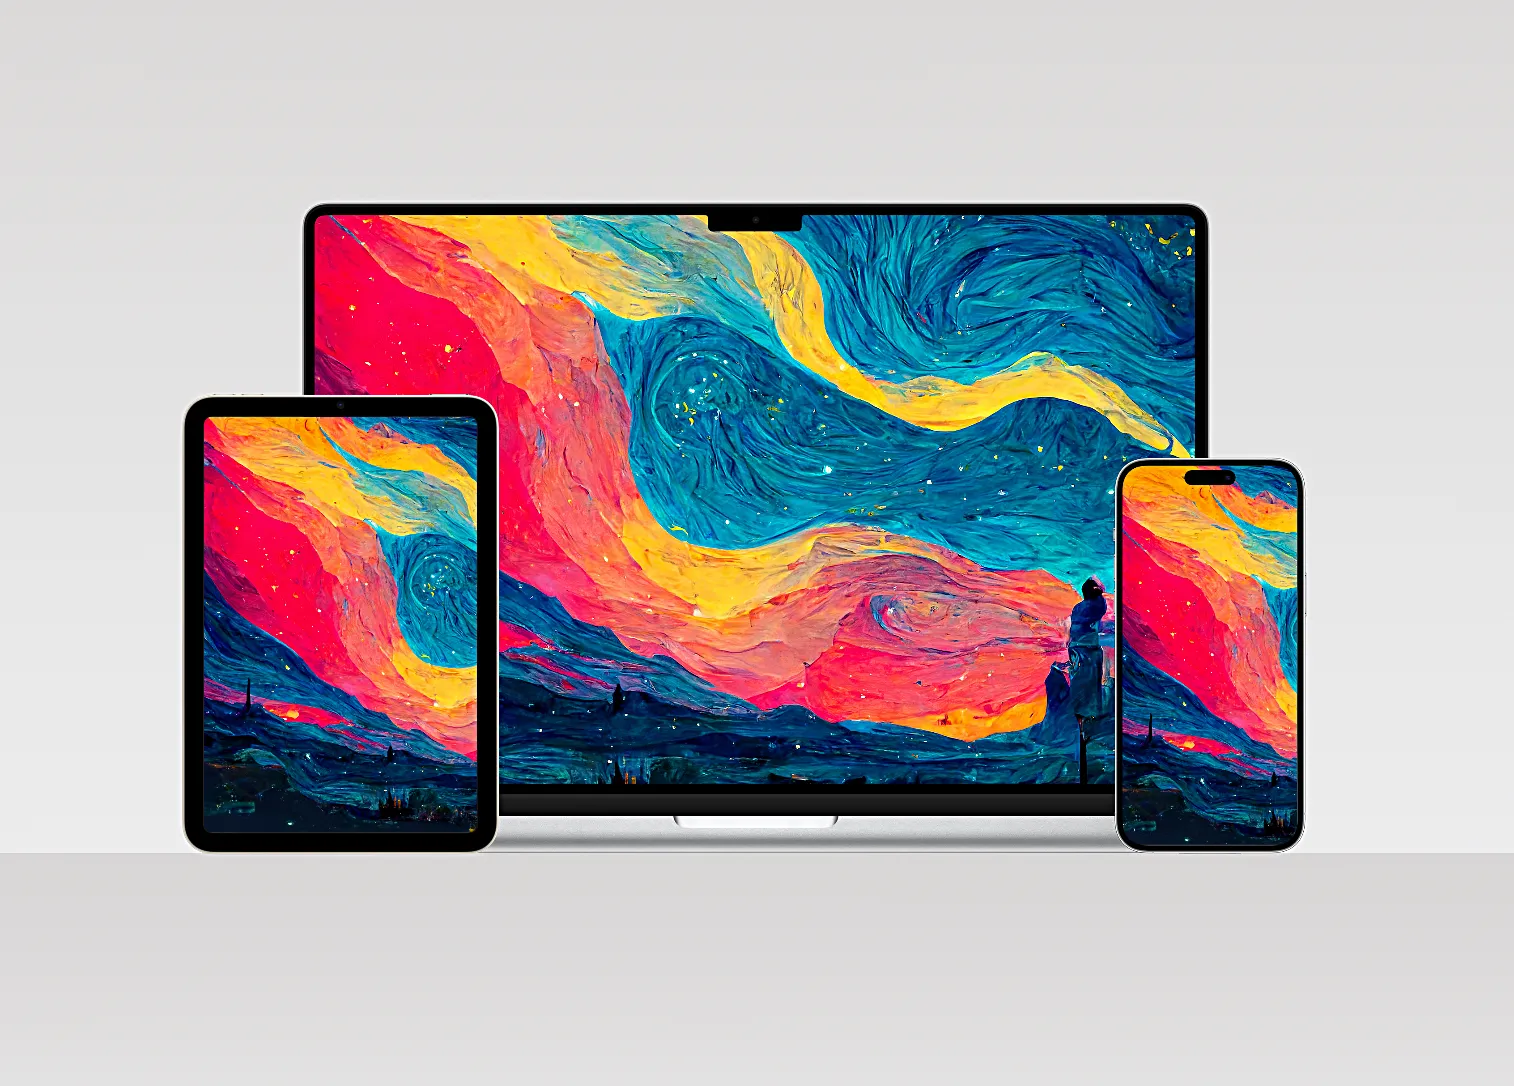 Hình nền cho iPhone, iPad và Mac chủ đề tranh Starry Night của Van Gogh